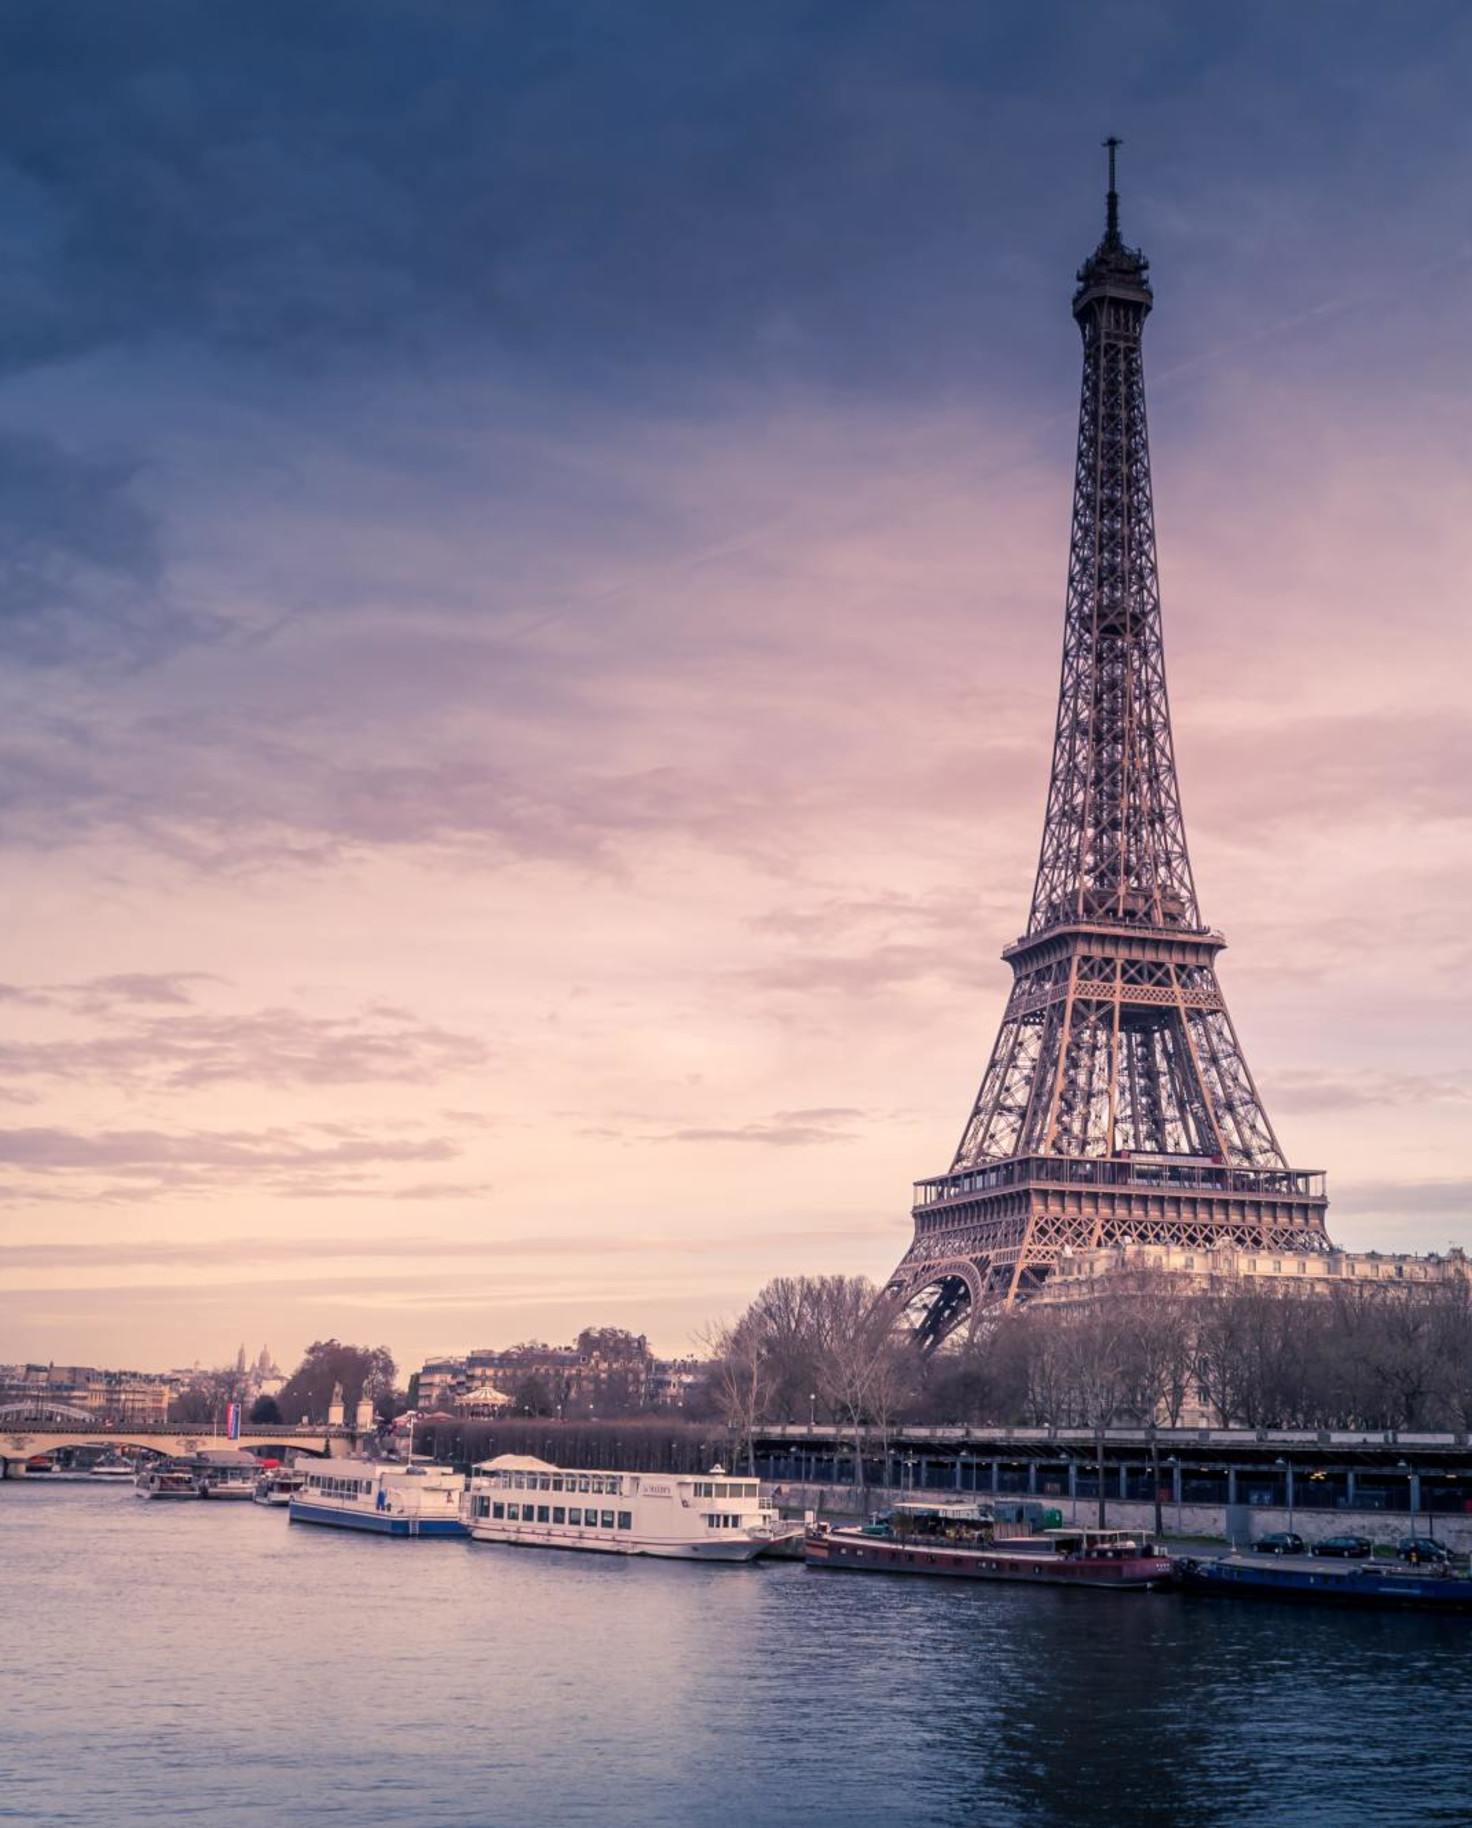 The Eiffel Tower on a dark cloudy day next to La Seine in Paris.